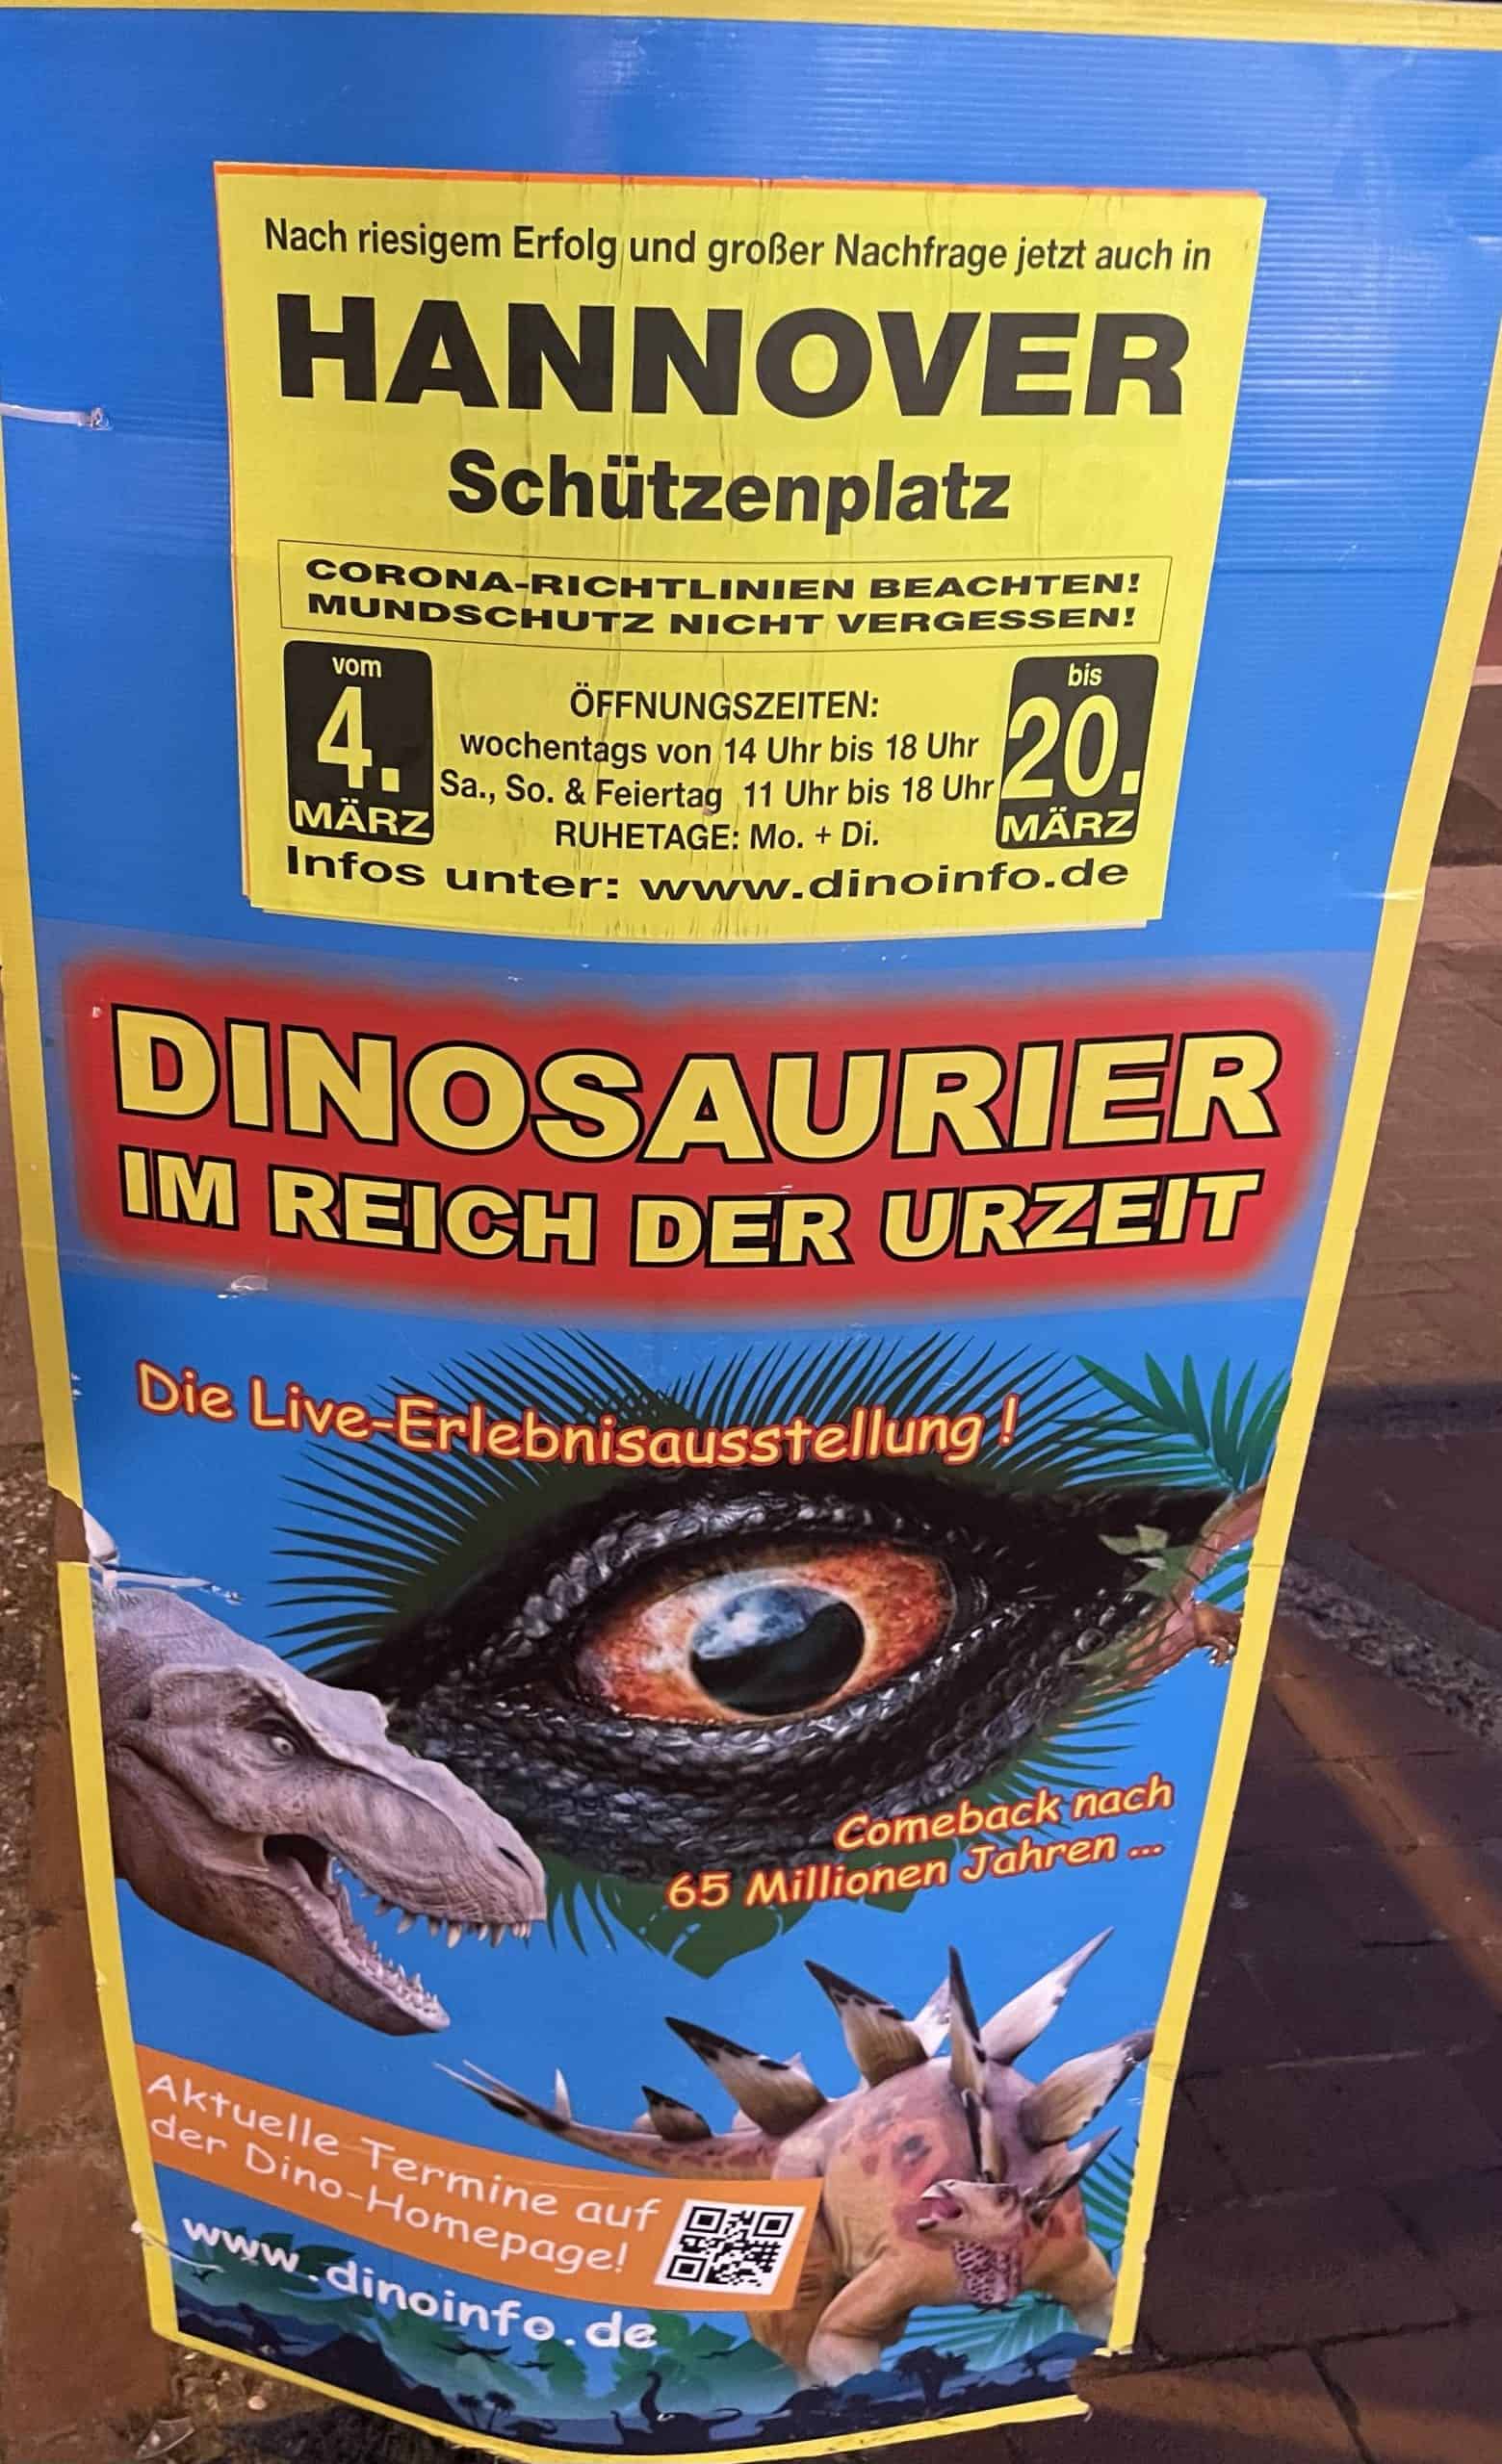 Aufstellerplakat für Dinosaurierausstellung auf dem Schützenplatz